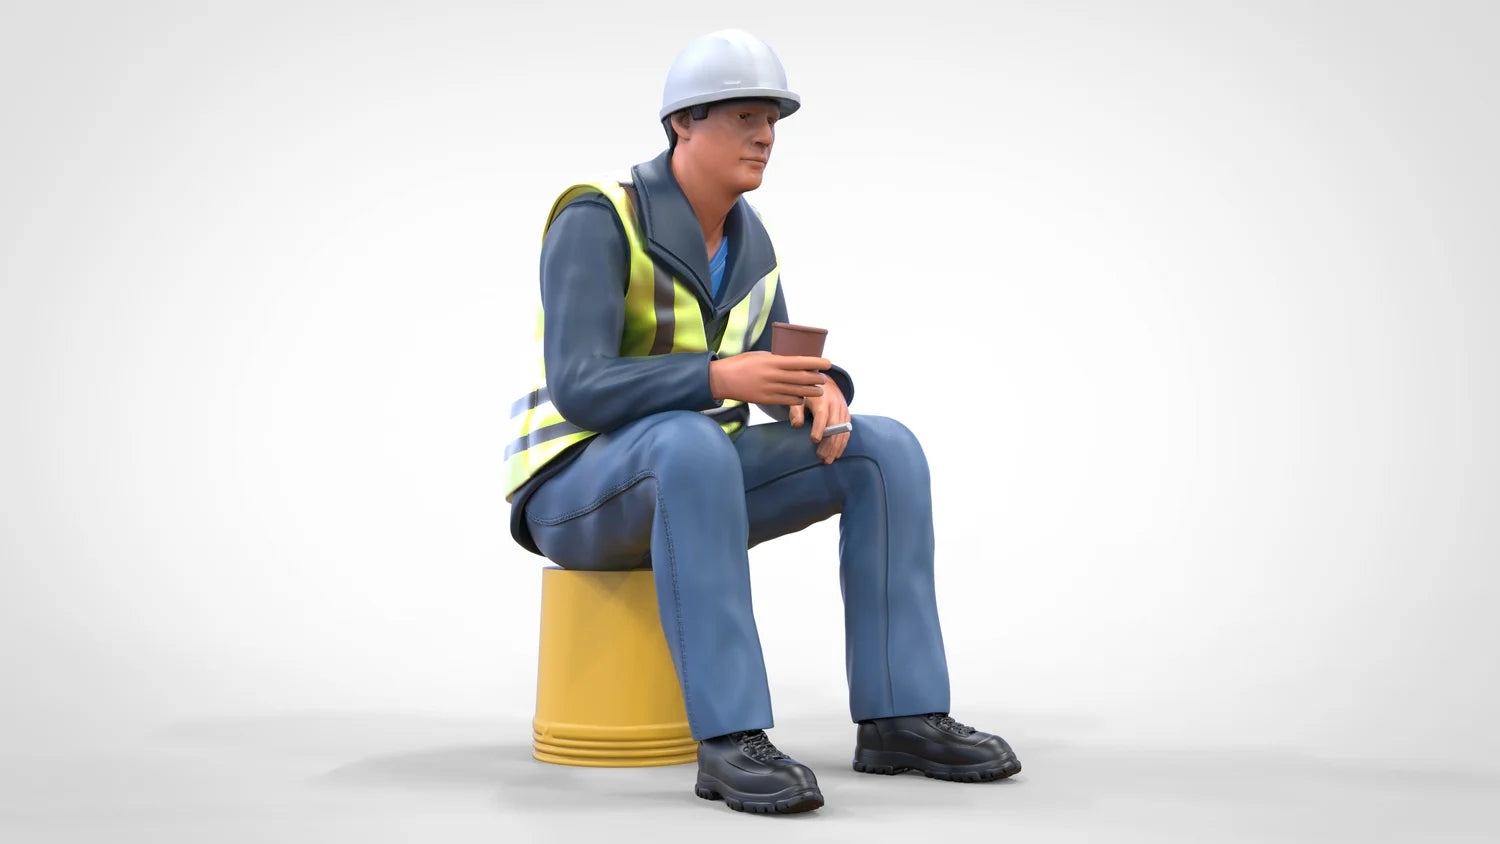 Produktfoto Diorama und Modellbau Miniatur Figur: Bauarbeiter sitzend auf Eimer